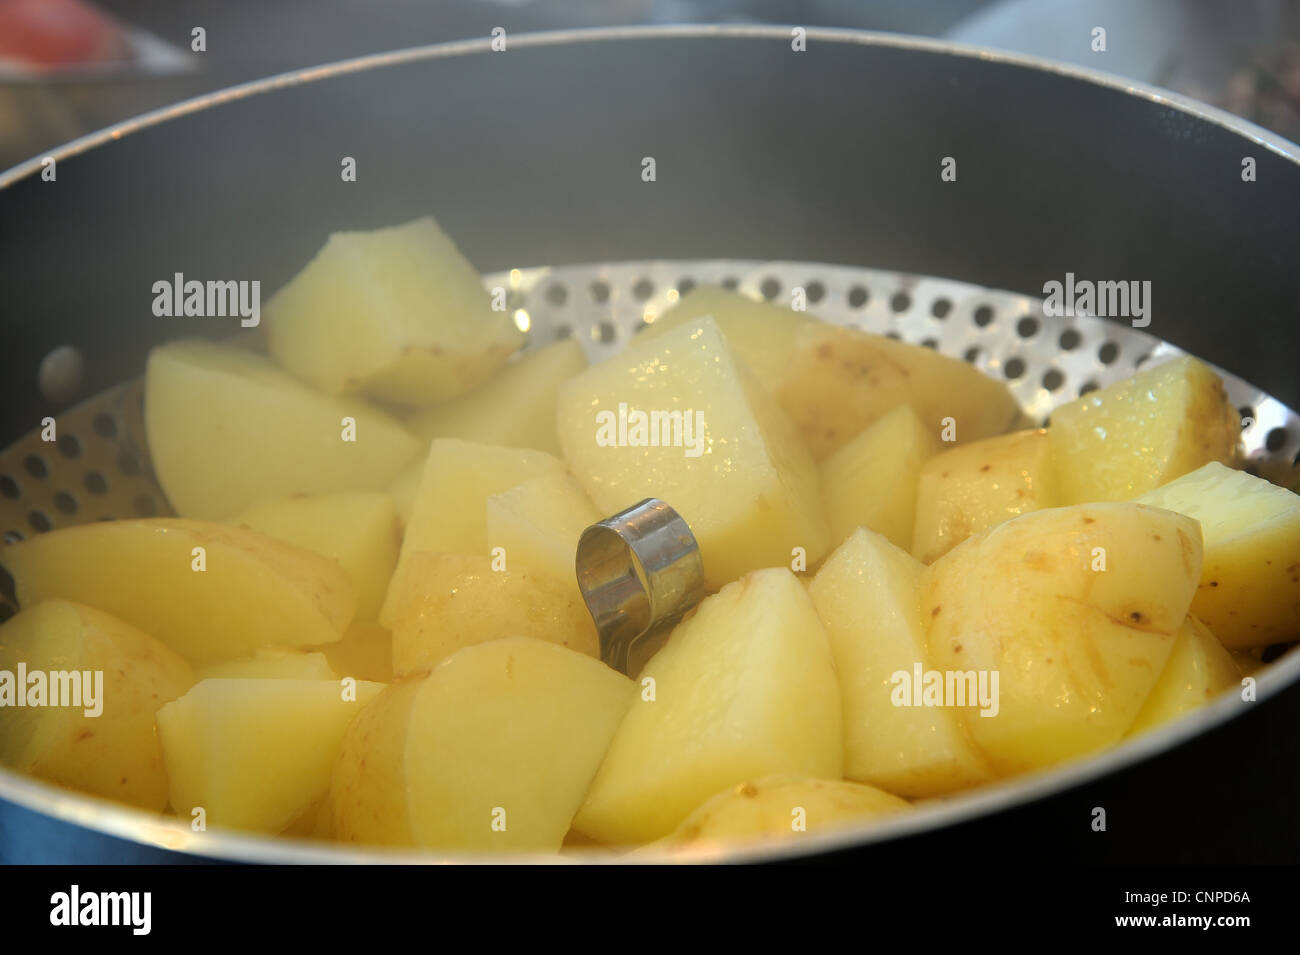 A cose de certaines pommes de terre cuite Banque D'Images